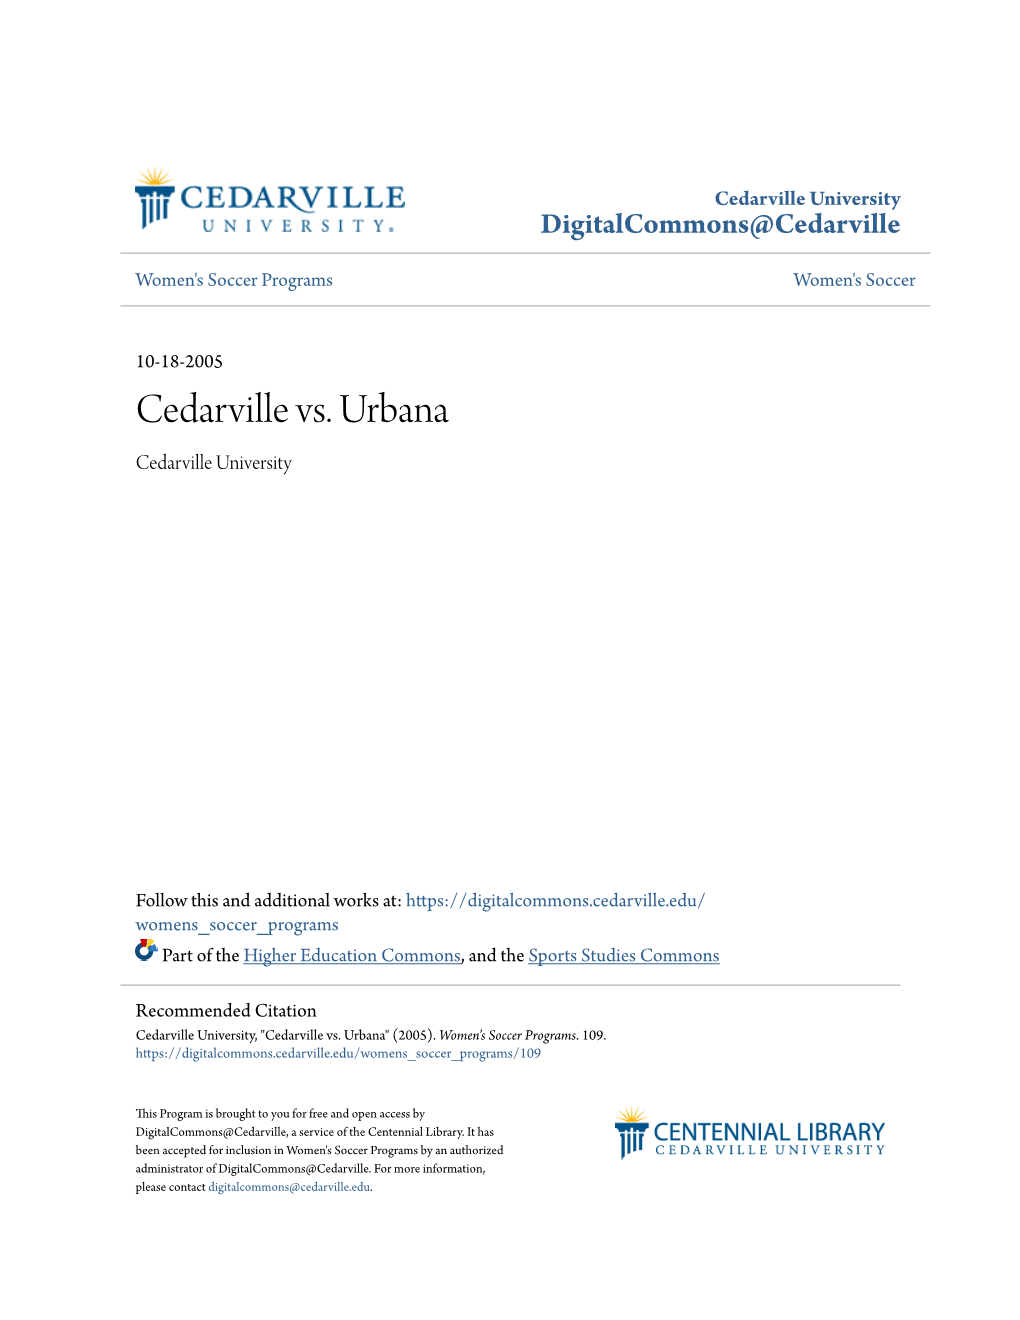 Cedarville Vs. Urbana Cedarville University